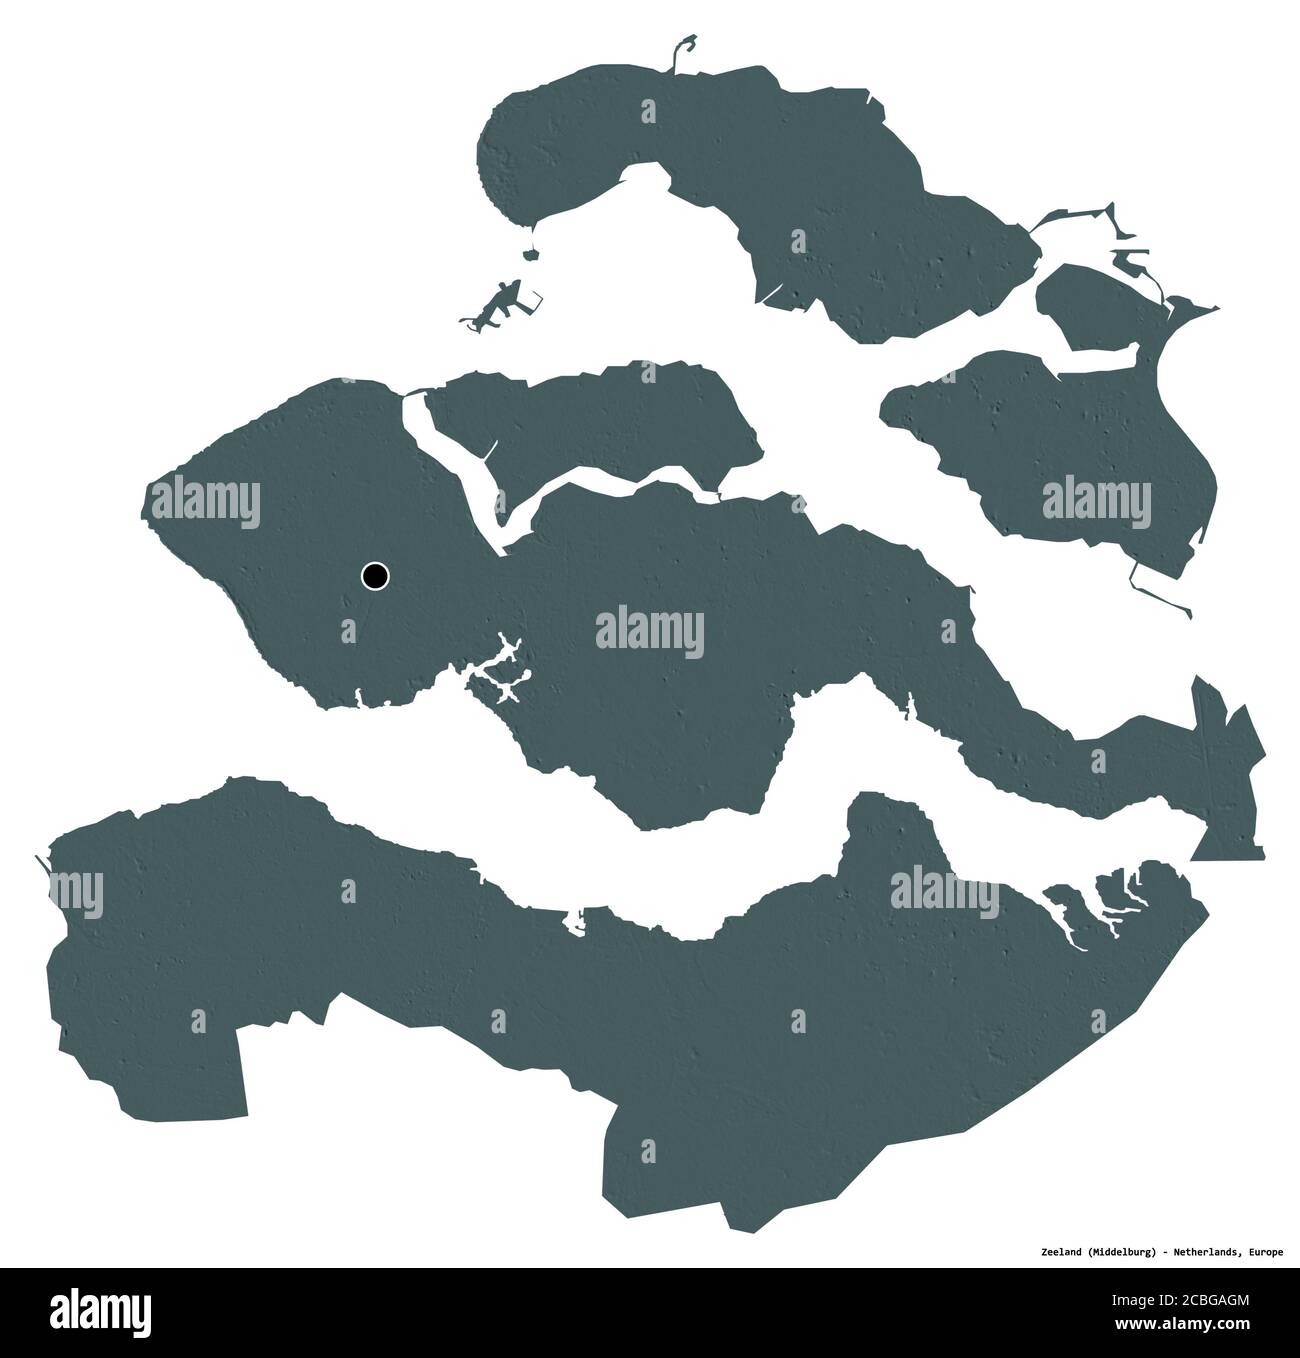 Forme de Zélande, province des pays-Bas, avec sa capitale isolée sur fond blanc. Carte d'altitude en couleur. Rendu 3D Banque D'Images